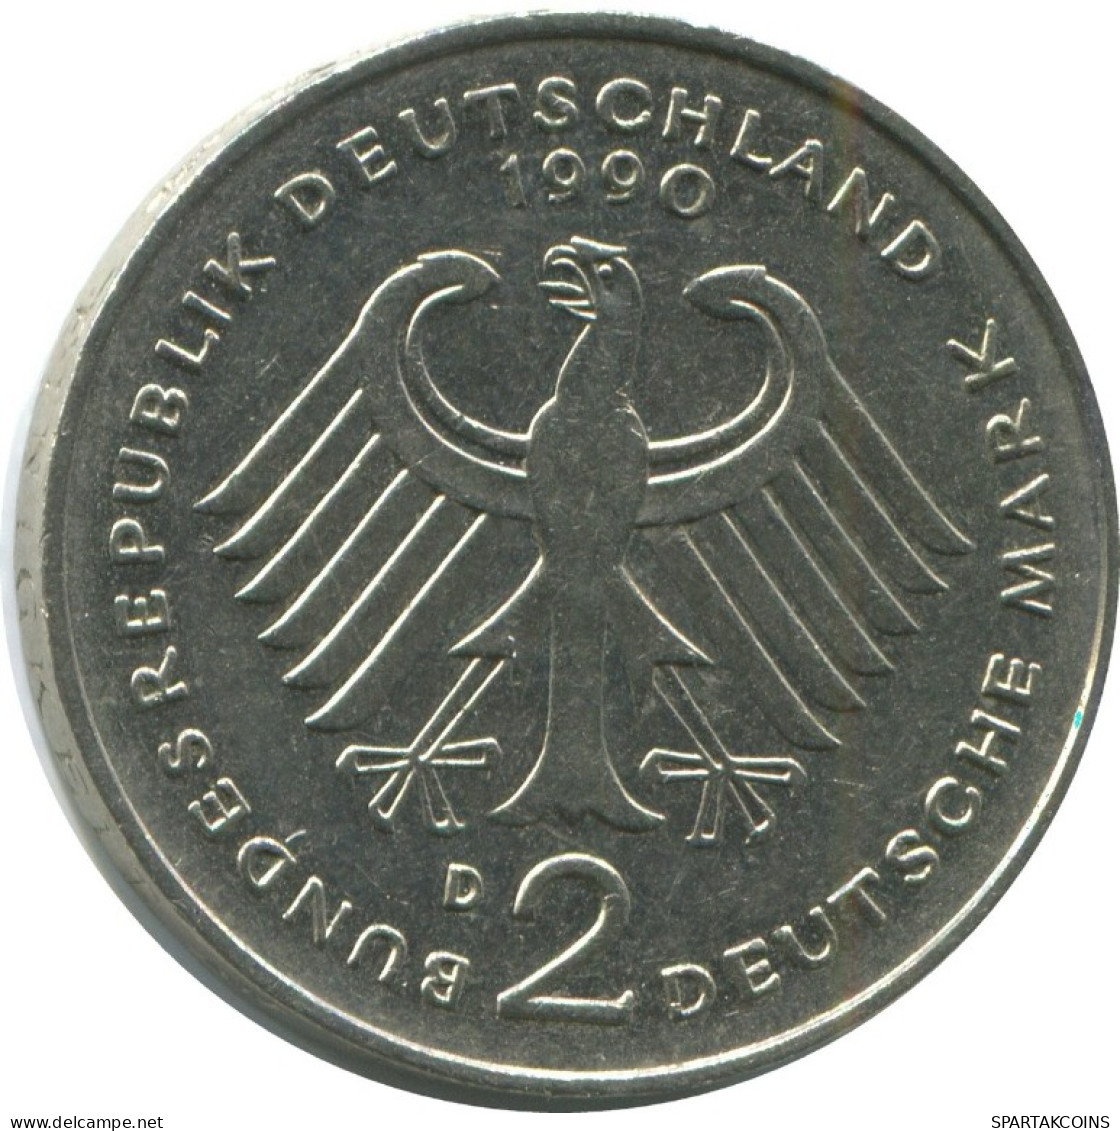 2 DM 1990 D K.SCHUMACHER BRD DEUTSCHLAND Münze GERMANY #AG252.3.D.A - 2 Mark